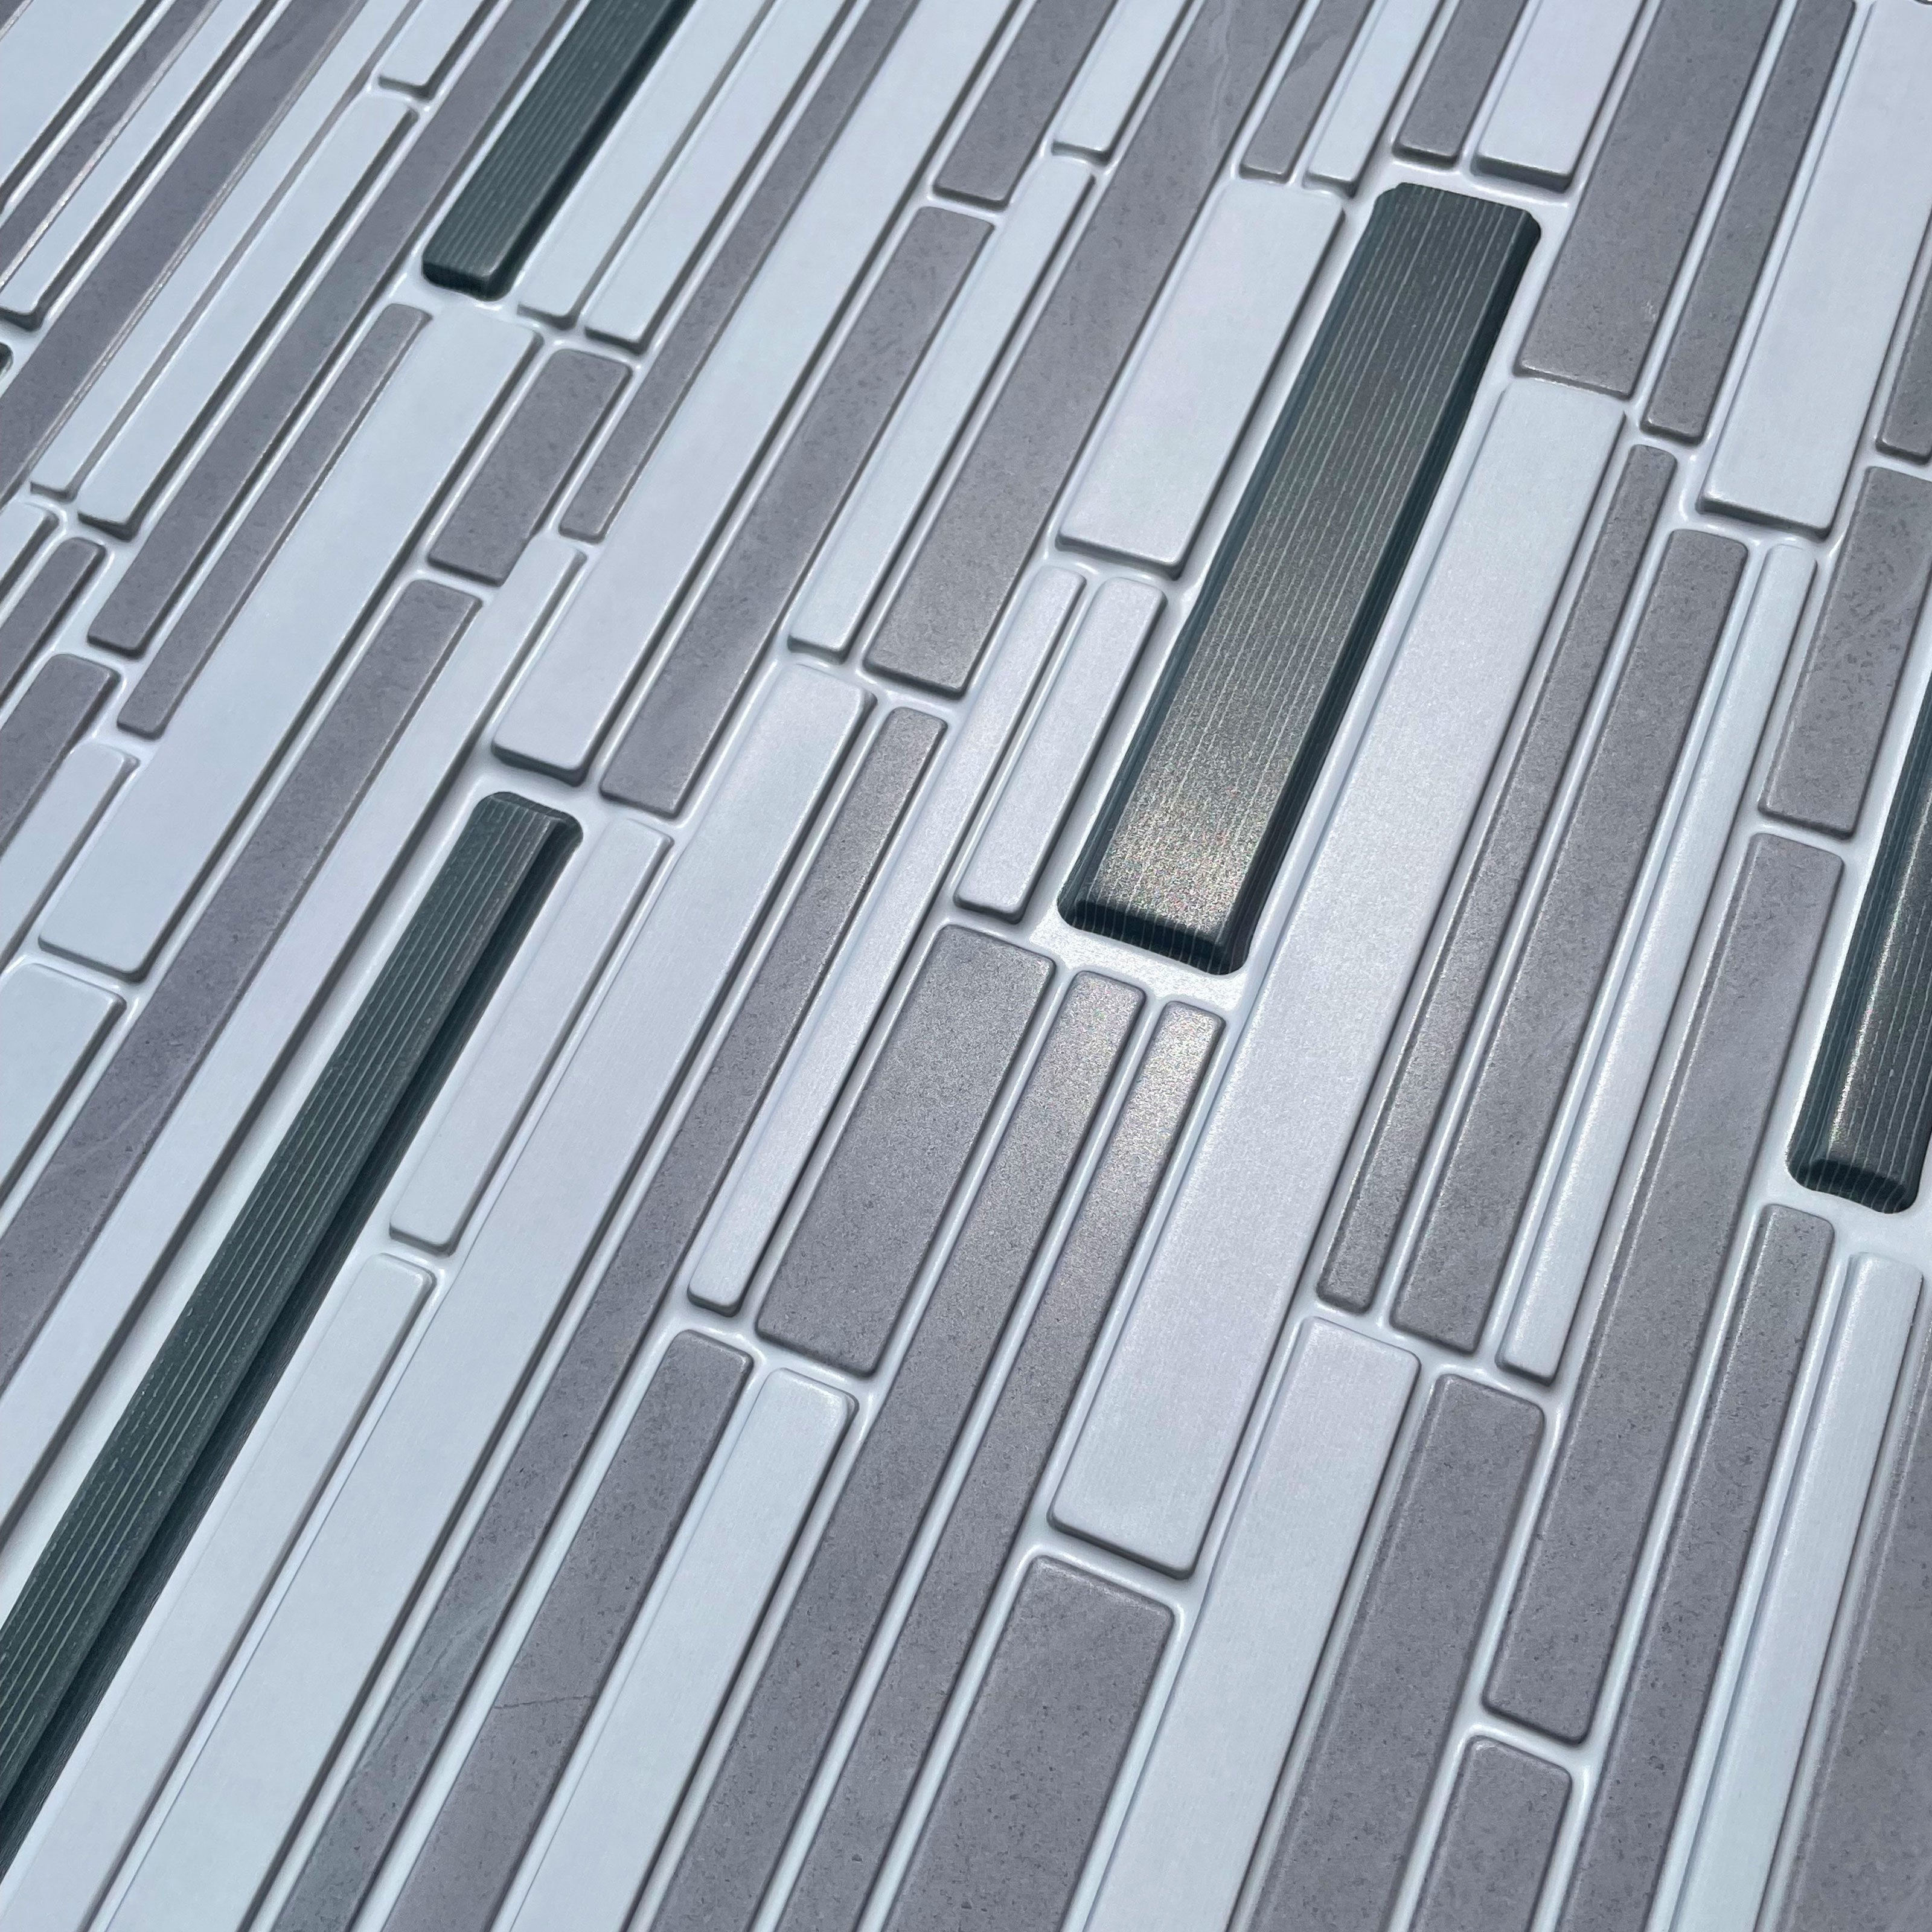 MAXI Pannelli 3D HI-RES Rivestimento a parete in PVC - PATCHWORK LAPIDEO- Realistici e isolanti. - Eternal Parquet